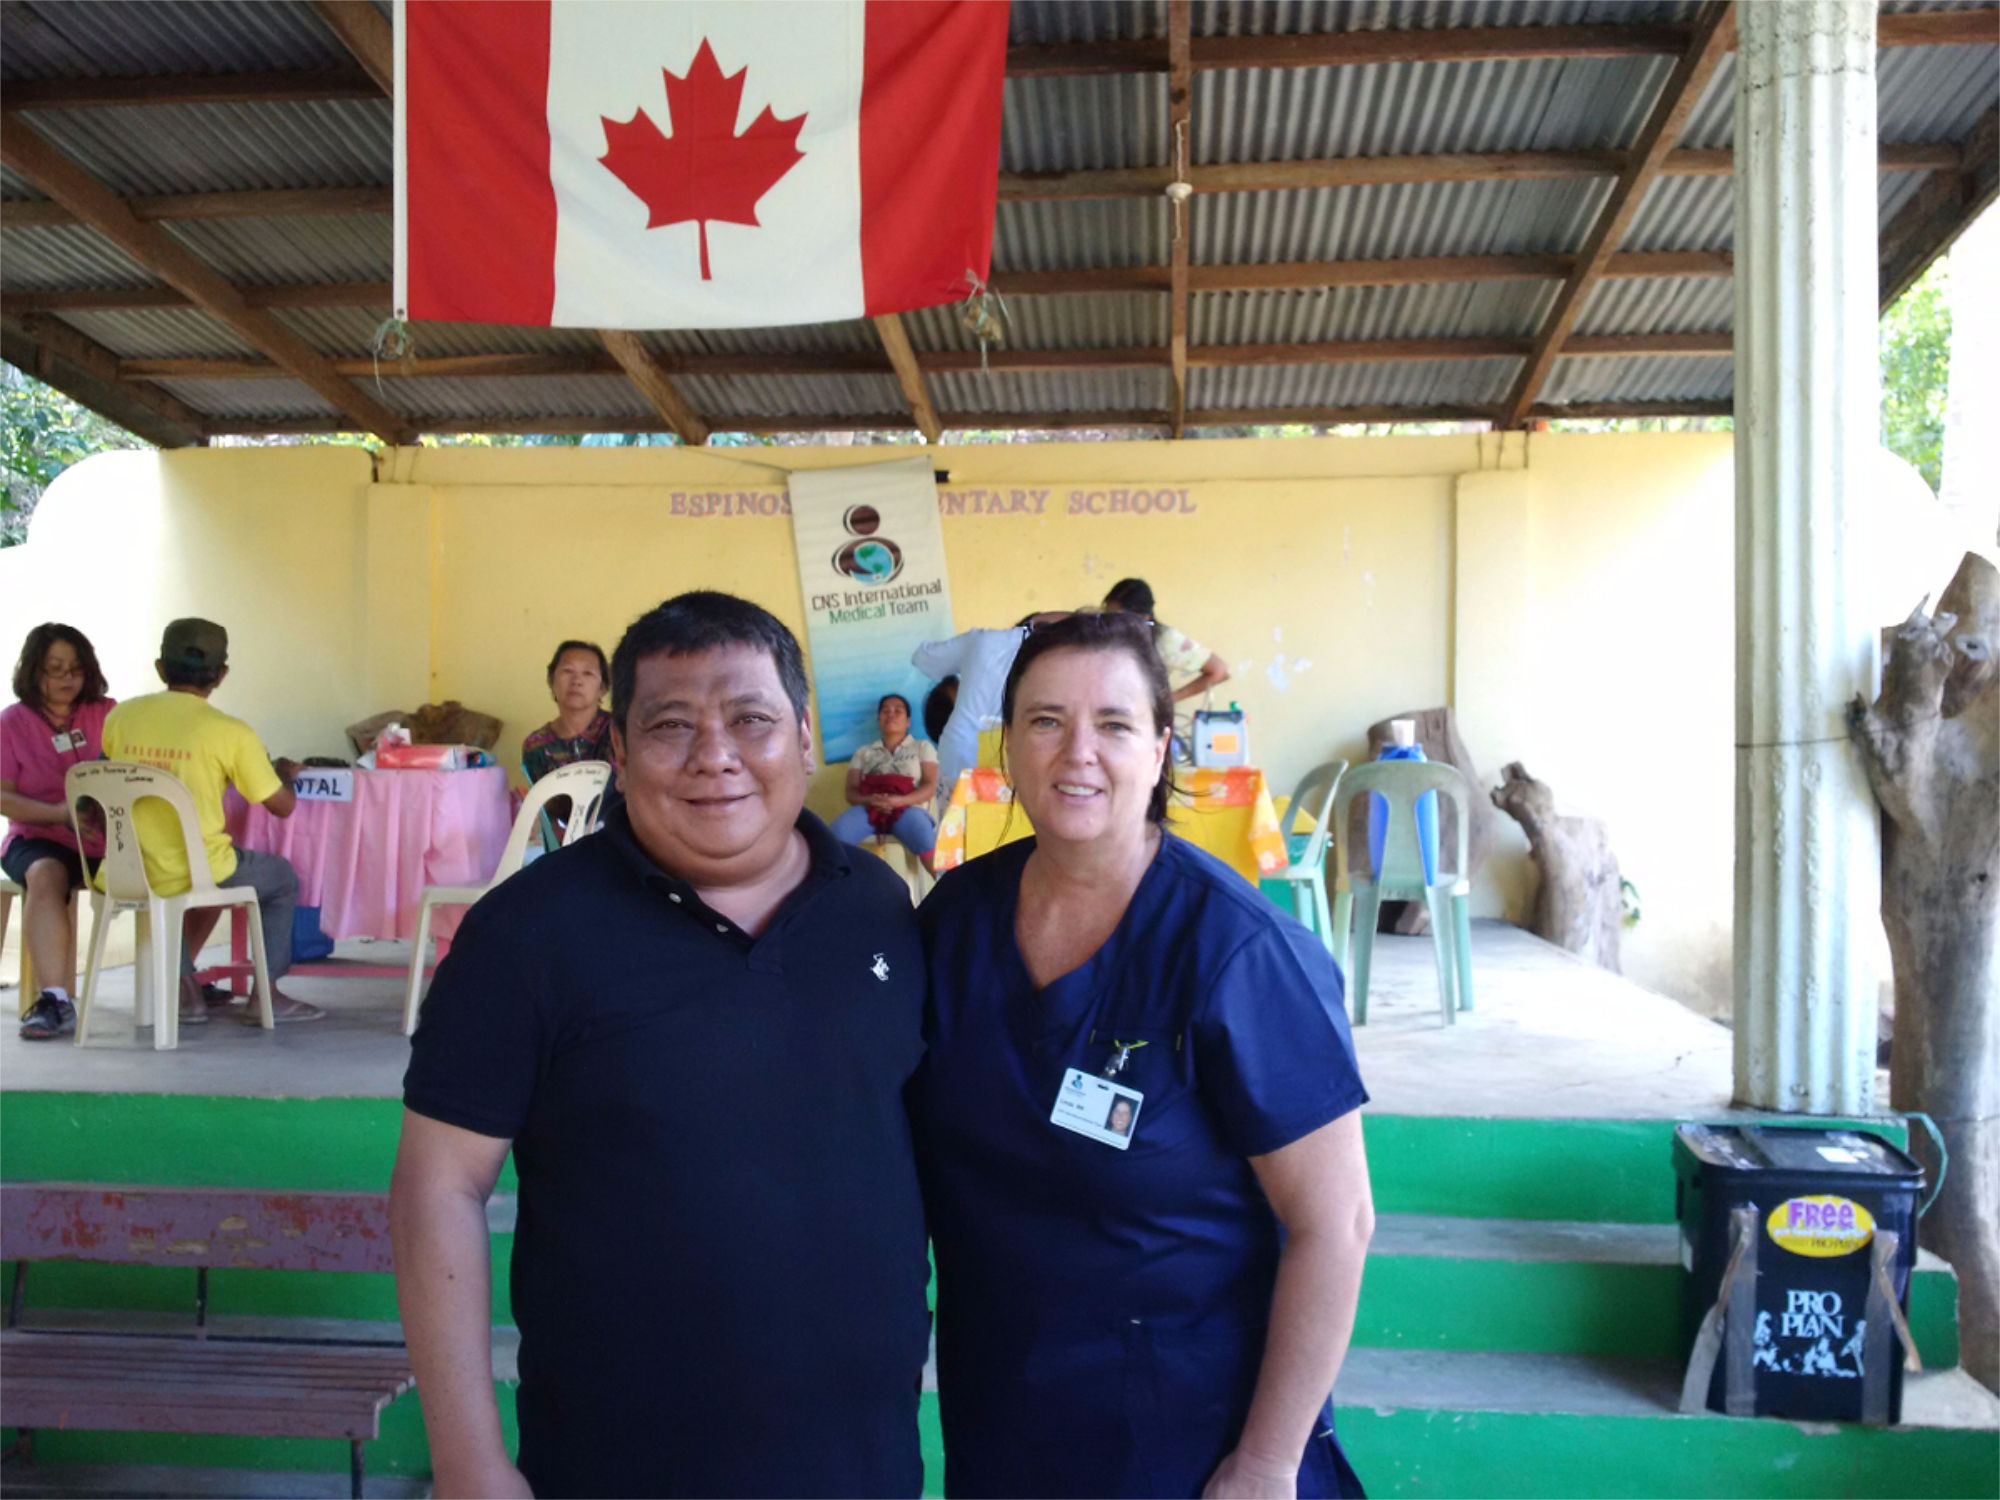 Patient et infirmière posant pour une photo sous un drapeau canadien lors d’une activité infirmière communautaire